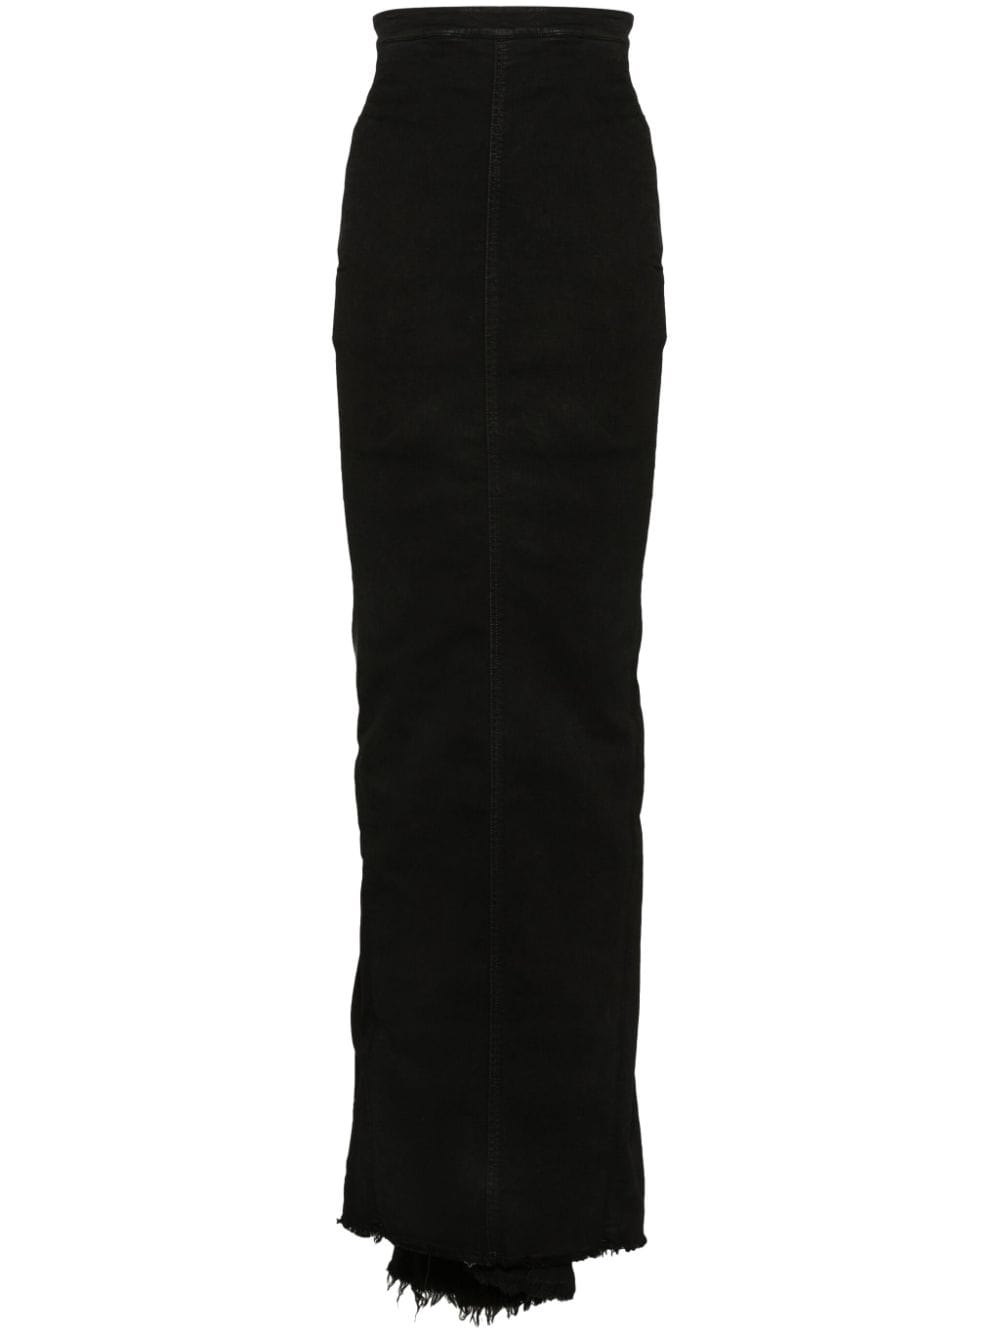 黑色高腰长款牛仔裙，带有毛边和小拖尾